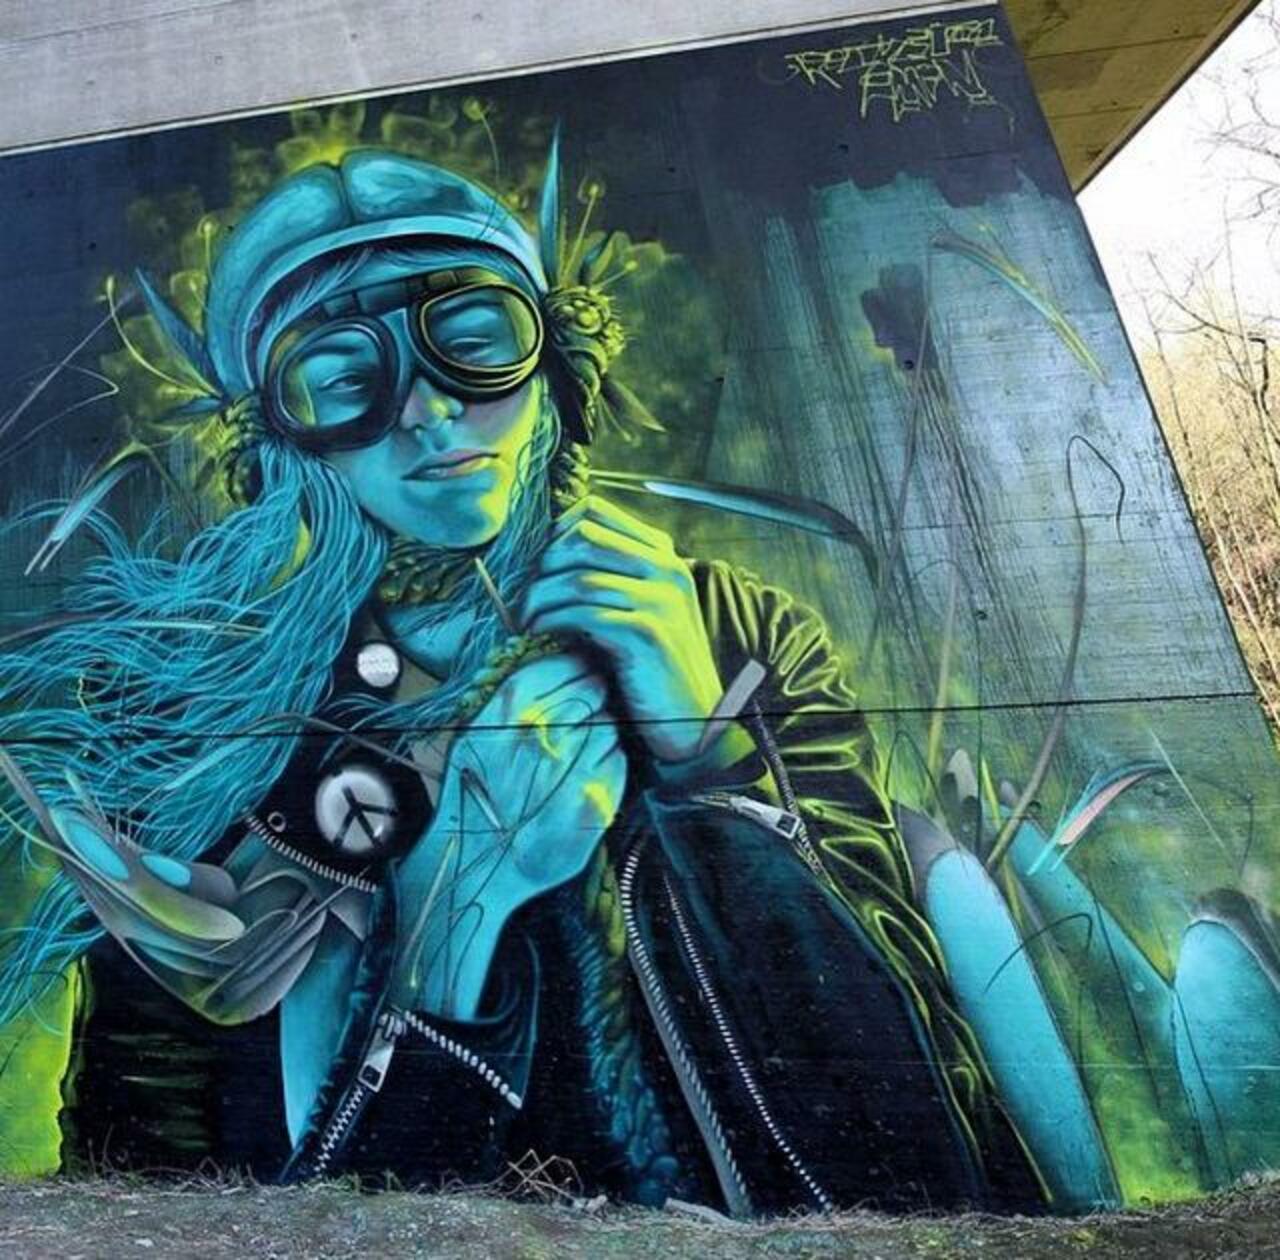 Street Art by Rocket & AMIN in Belgium

#art #arte #graffiti #streetart http://t.co/88gvDoj51Z